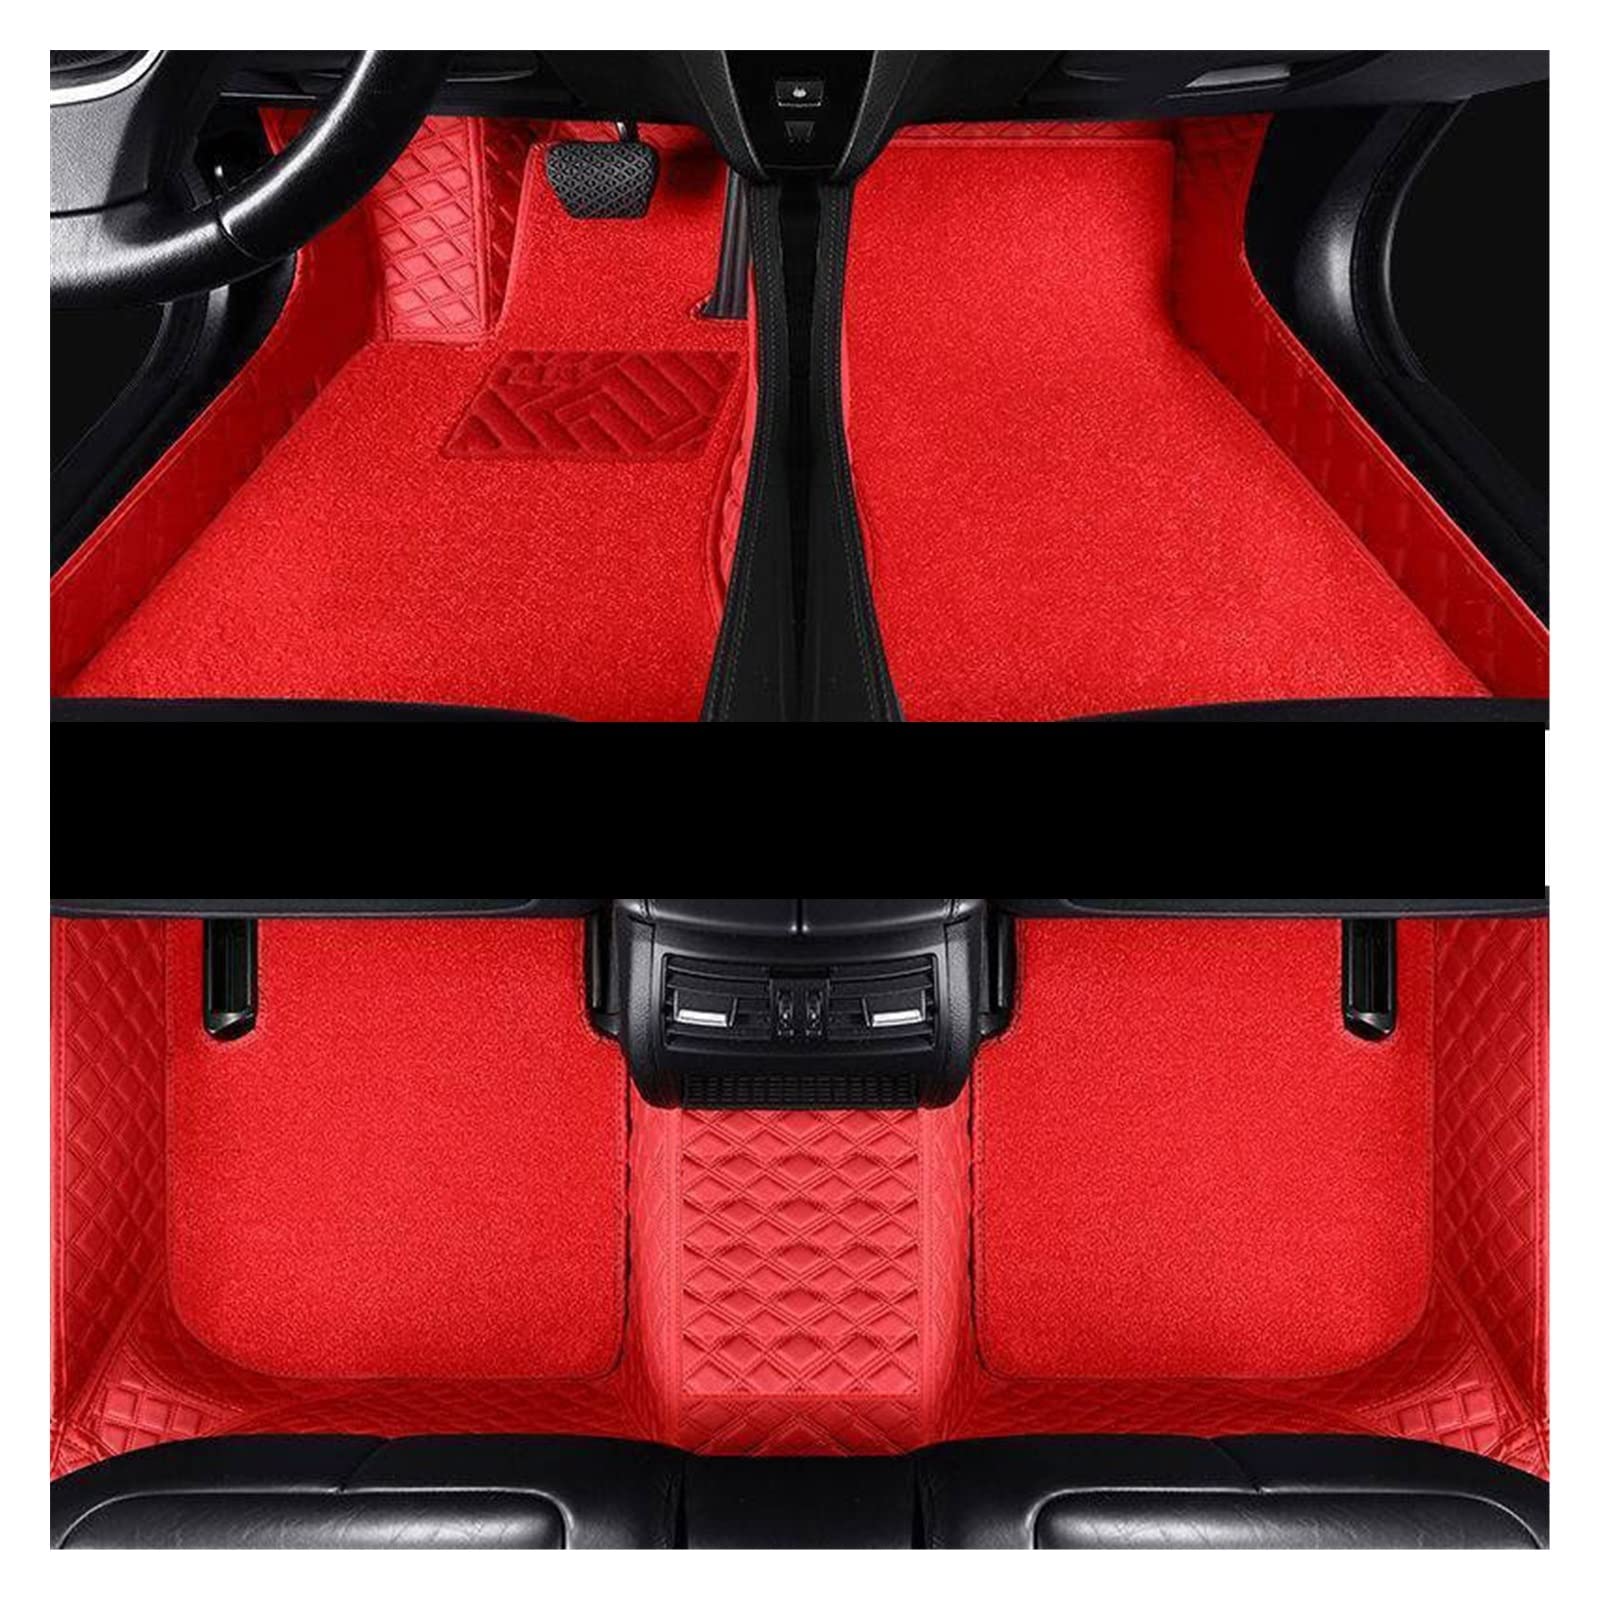 Fußmatten Für Tesla Für Modell X 2016 2017 2018 2019 Auto Fußmatten Teppiche Autoinnenausstattung Teile Armaturenbrett Fußpolster Autos Autofußmatten(Red double) von DKPMWD